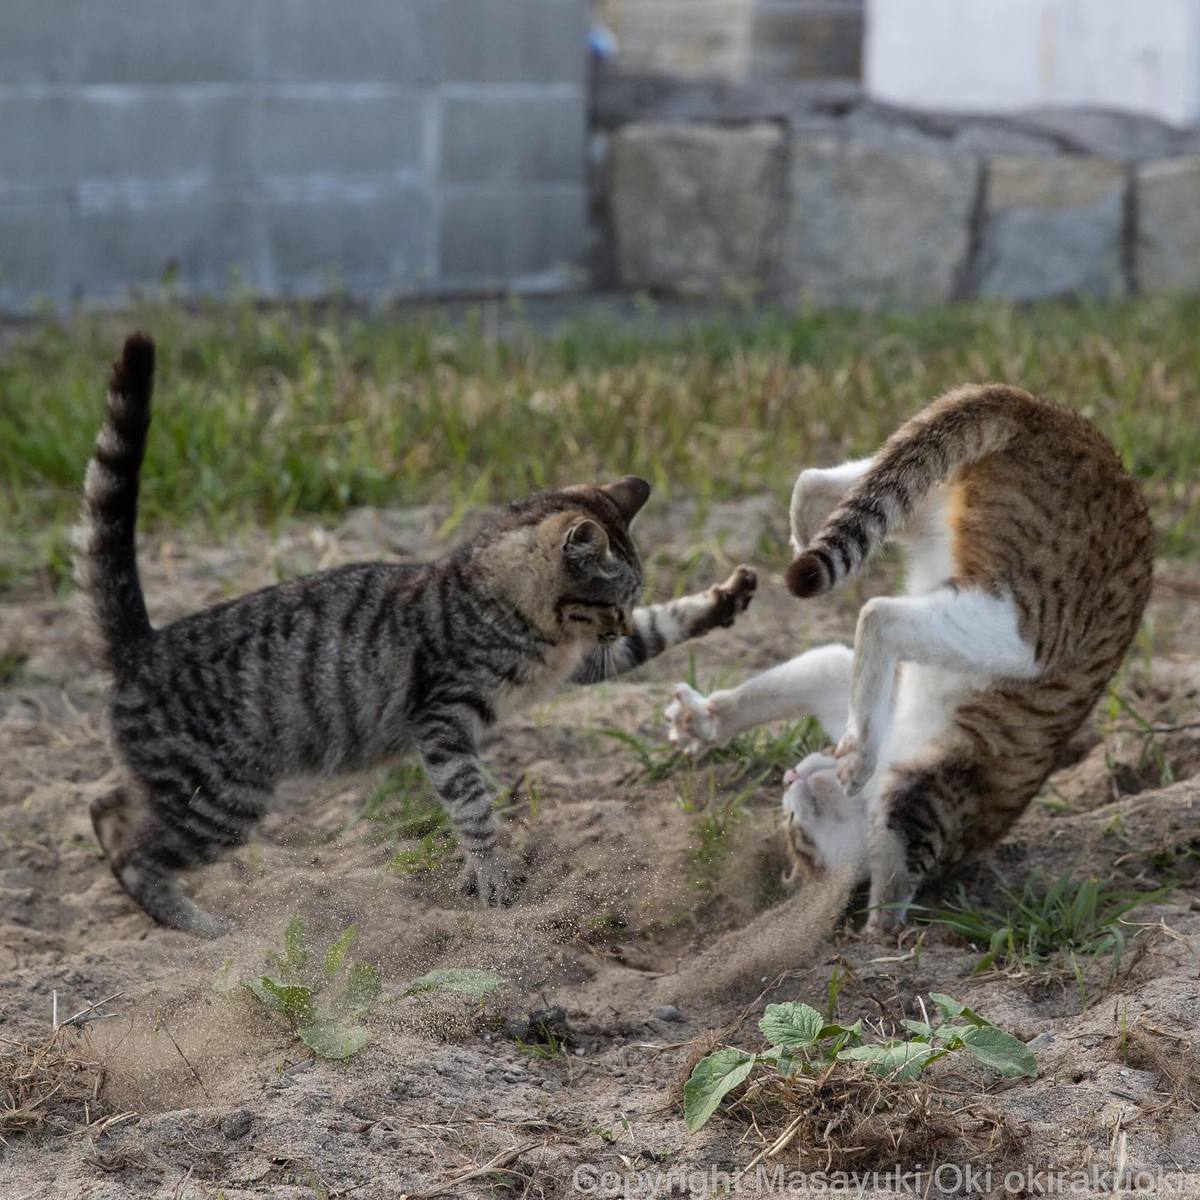 20 снимков уличных котов от японского фотографа, который как никто умеет запечатлевать харизму этих бродяг 66